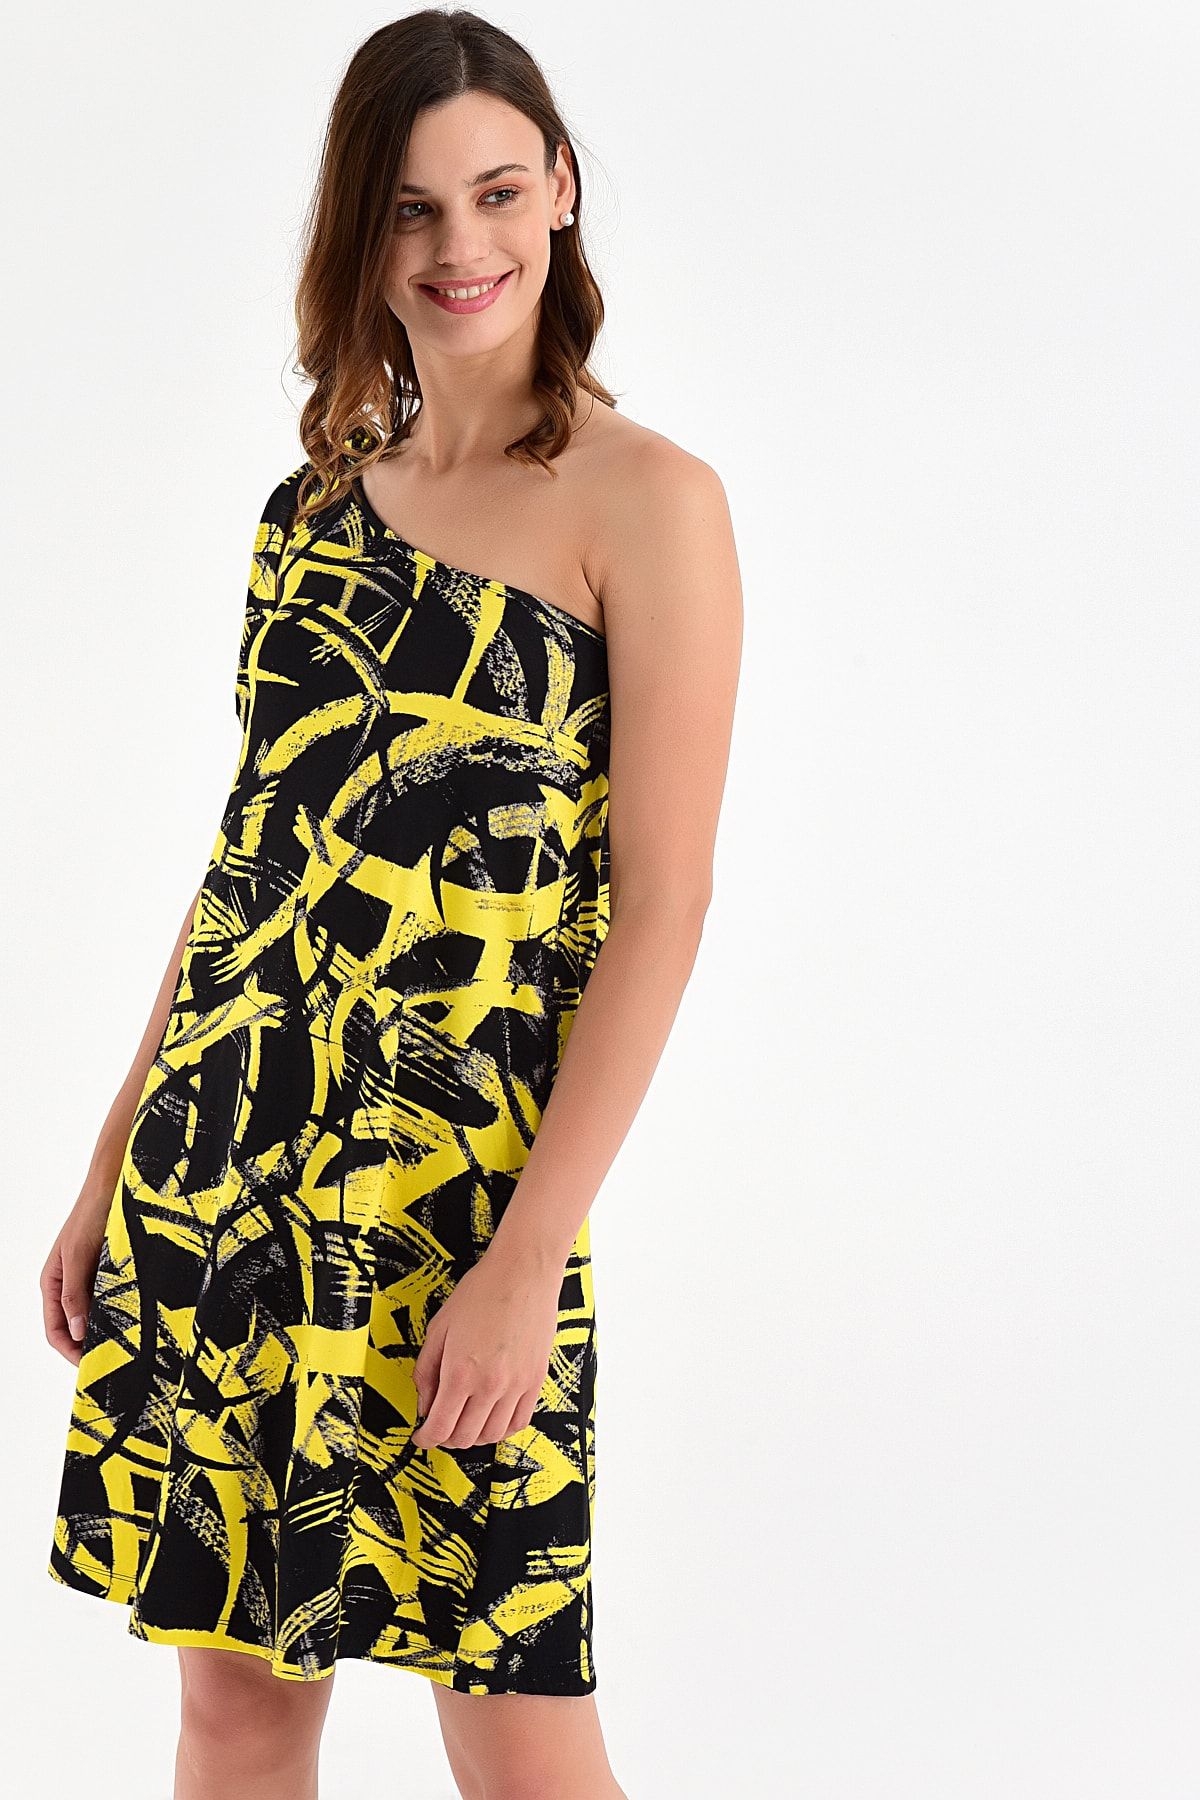 Laranor Kadın Desen-4 Tek Omuzdan Bağlamalı Desenli Elbise 20L6844